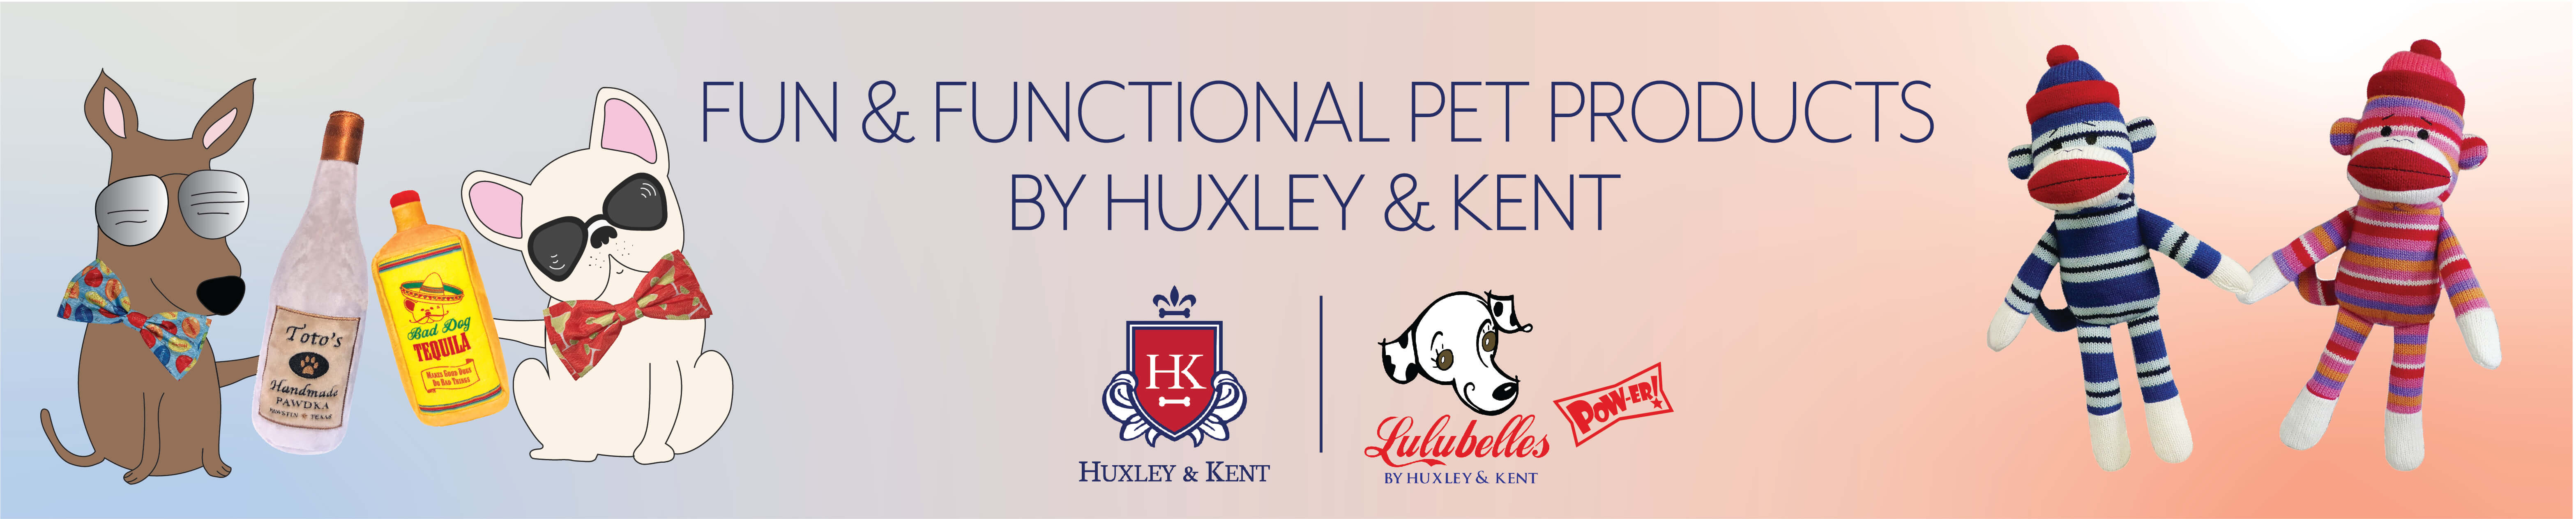 Huxley & Kent Pet Products Logo